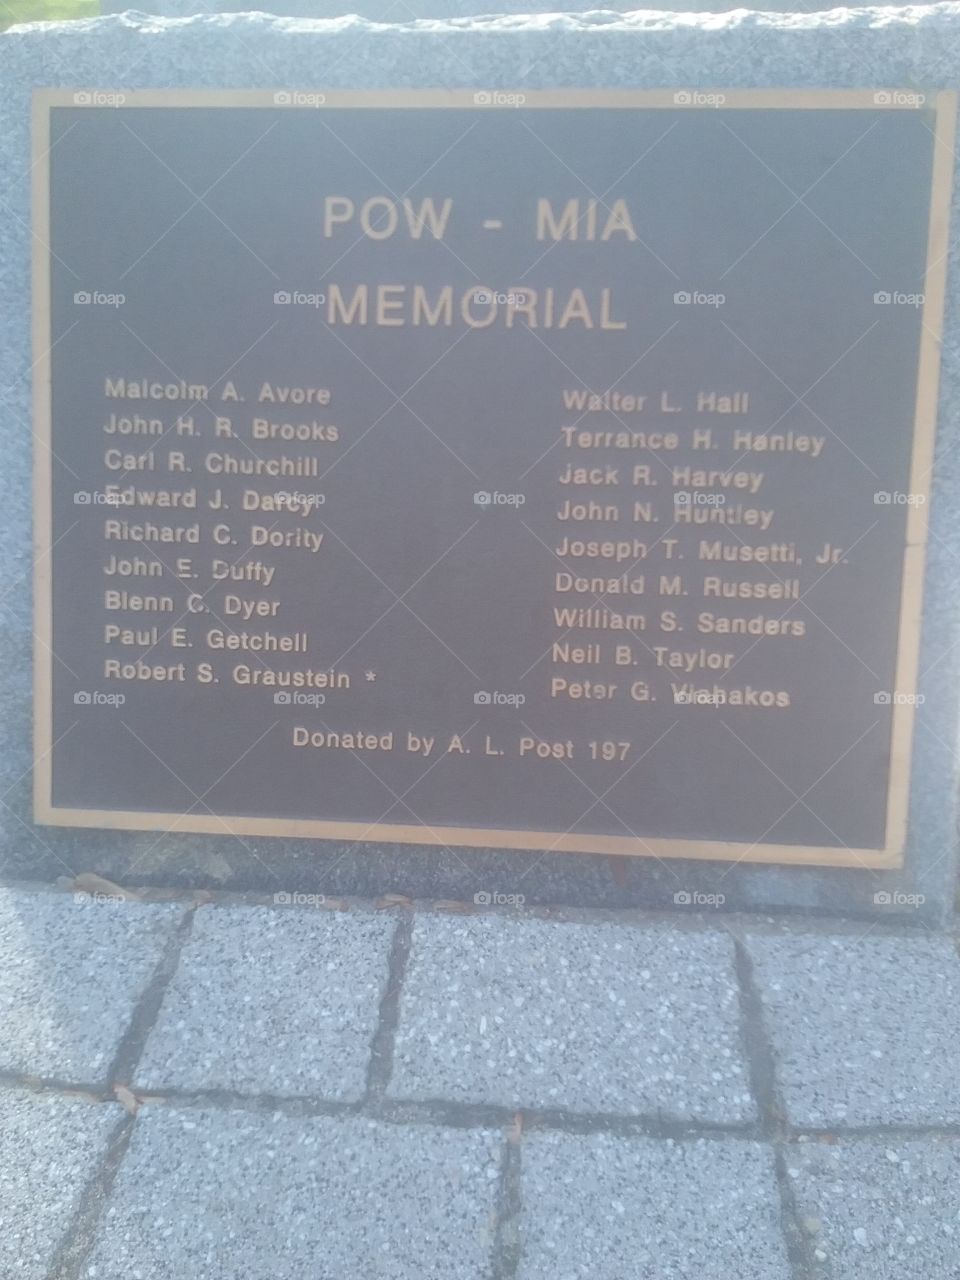 Westbrook, Maine's POW - MIA memorial stone